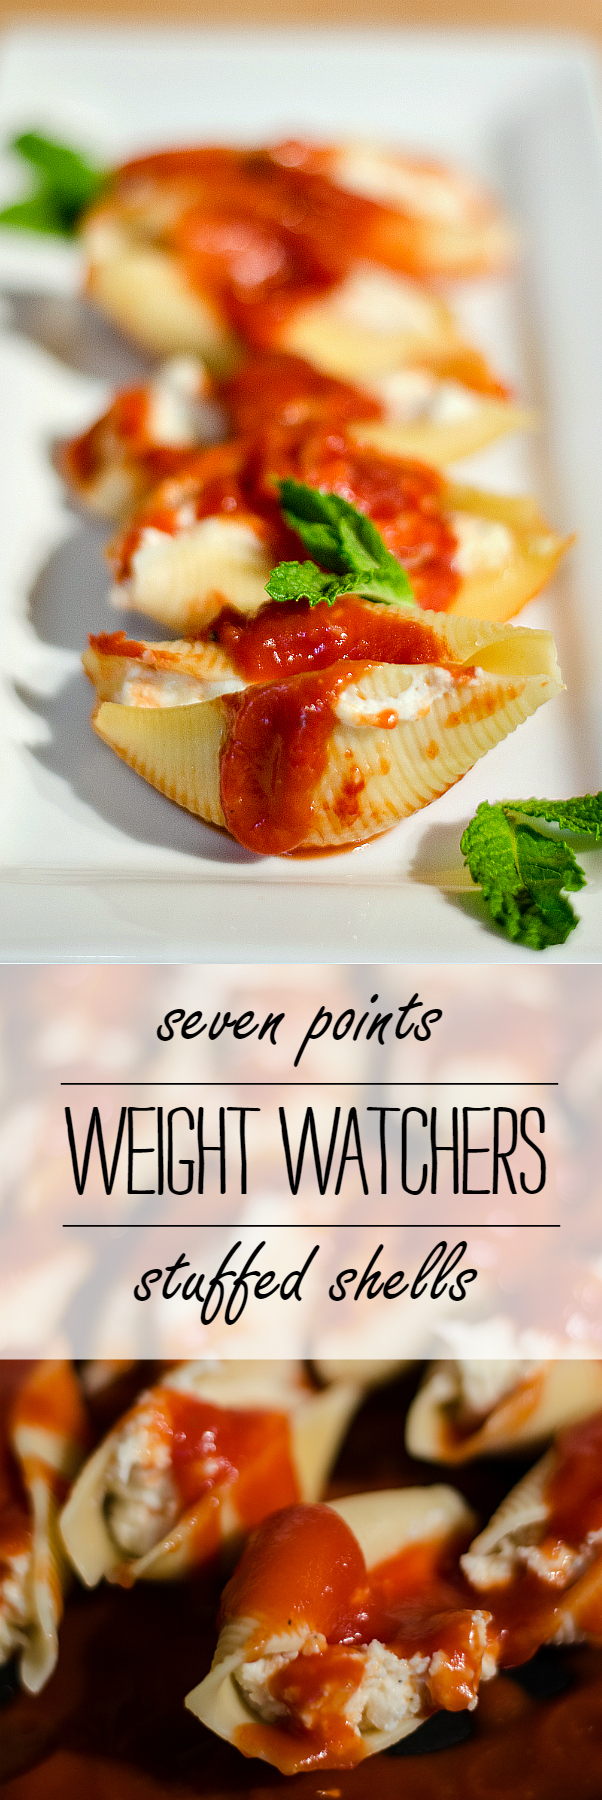 Weight Watchers Dinner Recipe Ideas